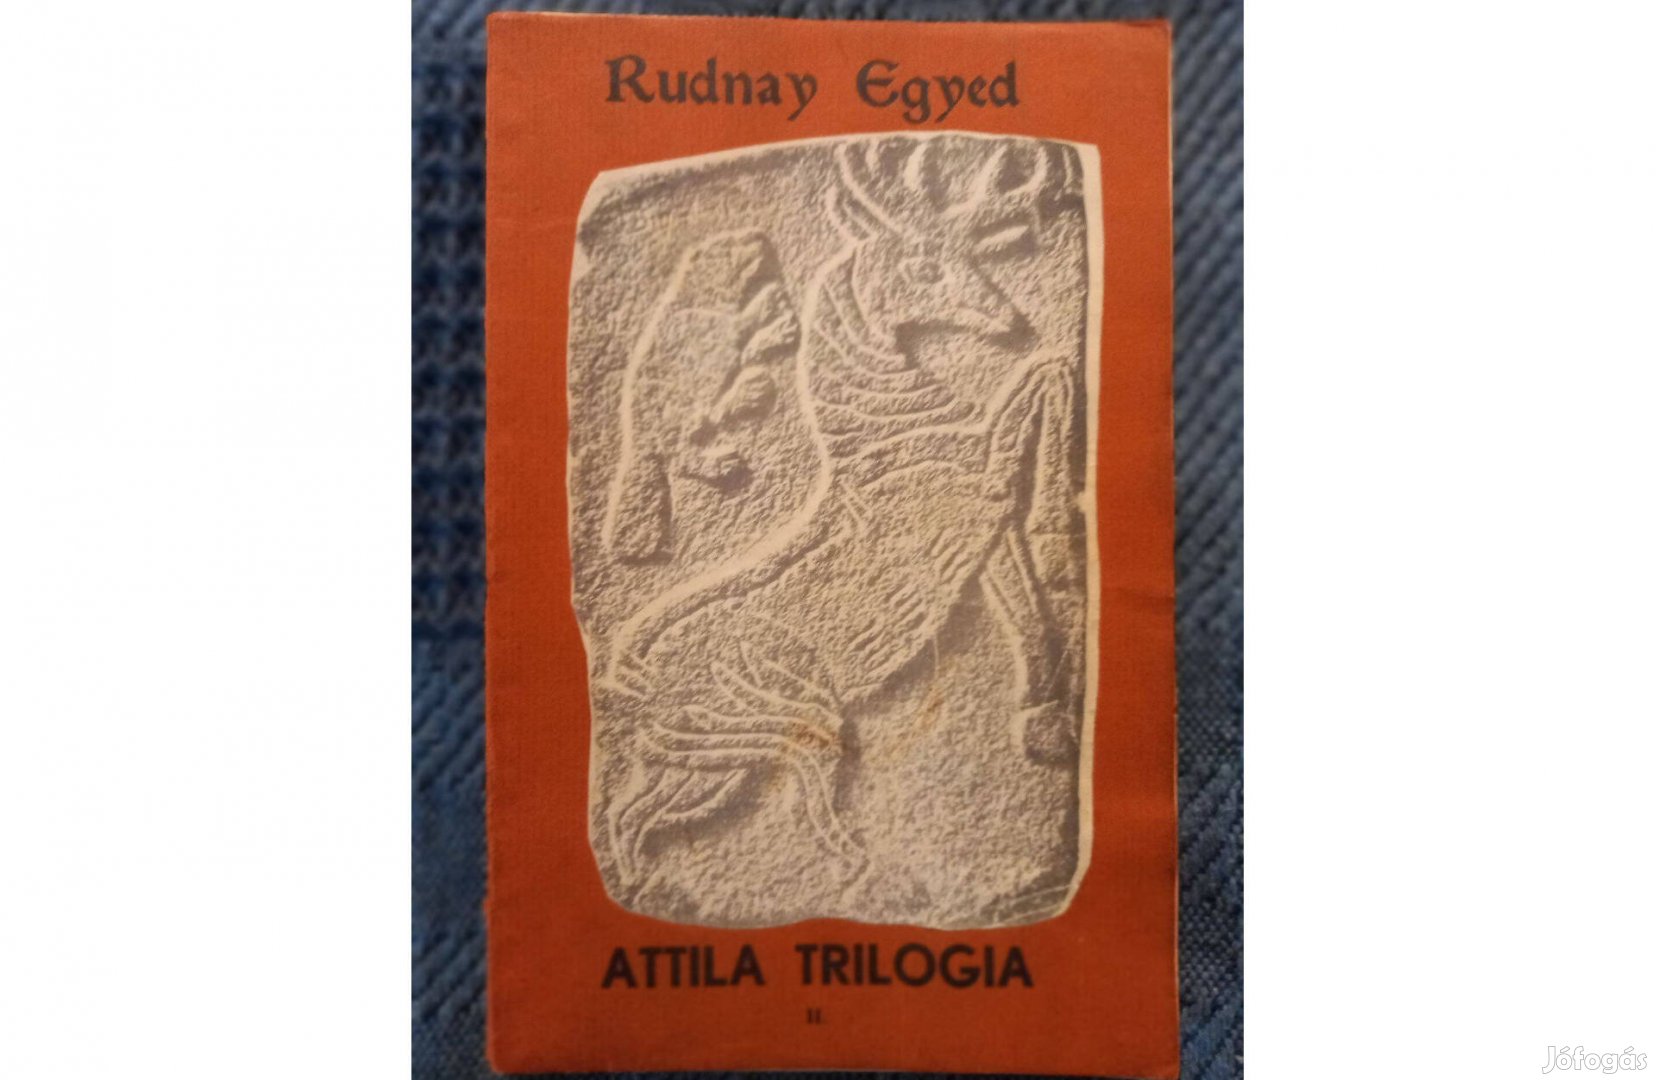 Rudnay Egyed: Attila trilógia II. kötete eladó. Antikvár, dedikált